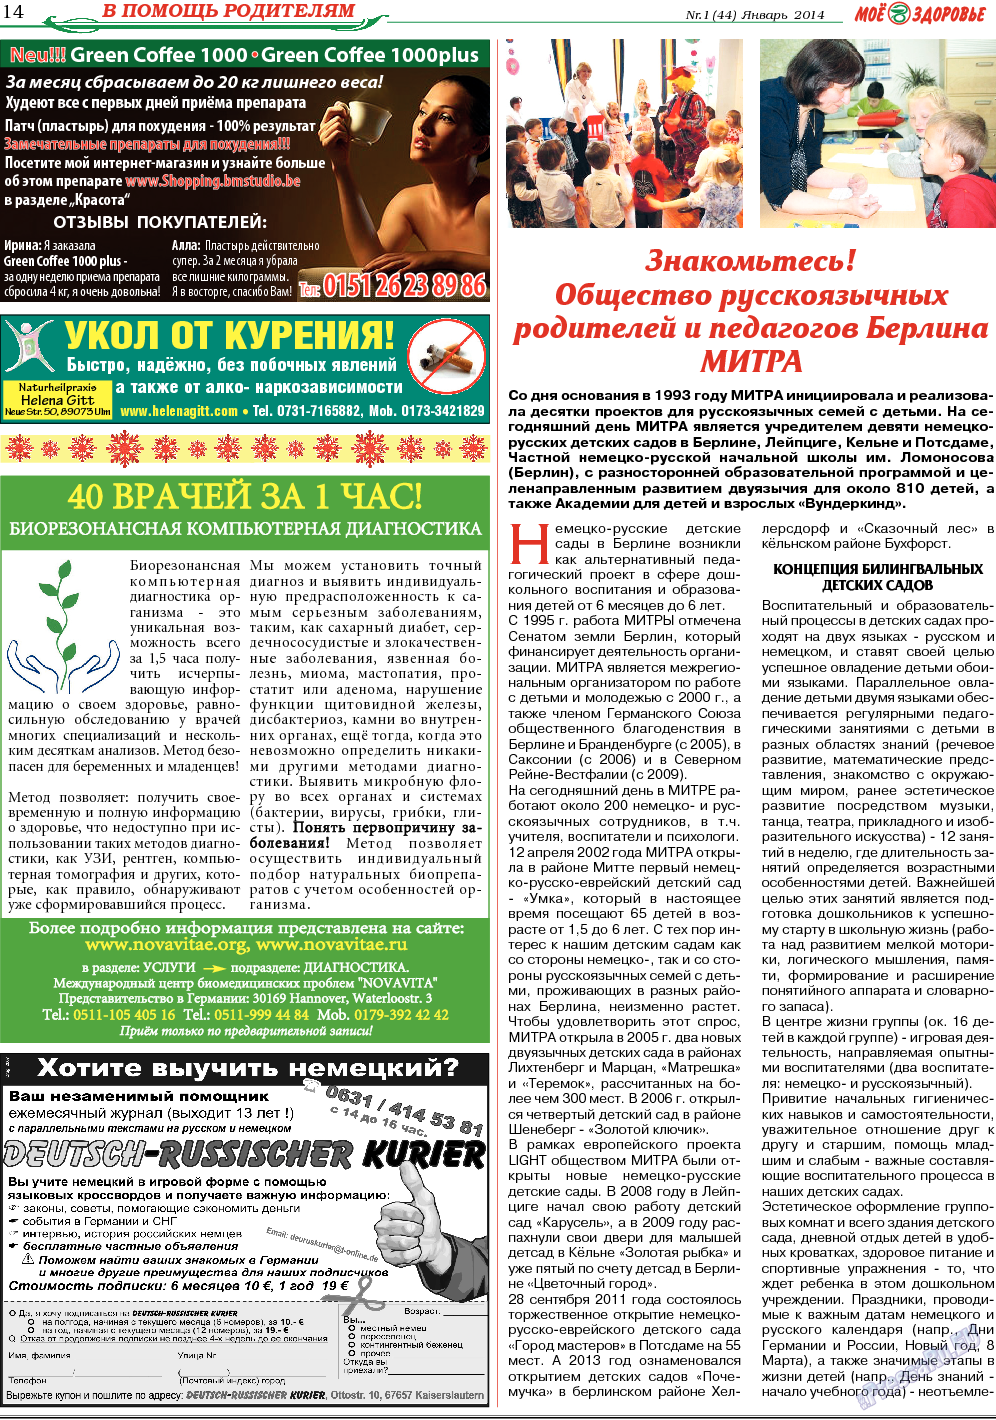 Кругозор, газета. 2014 №1 стр.14